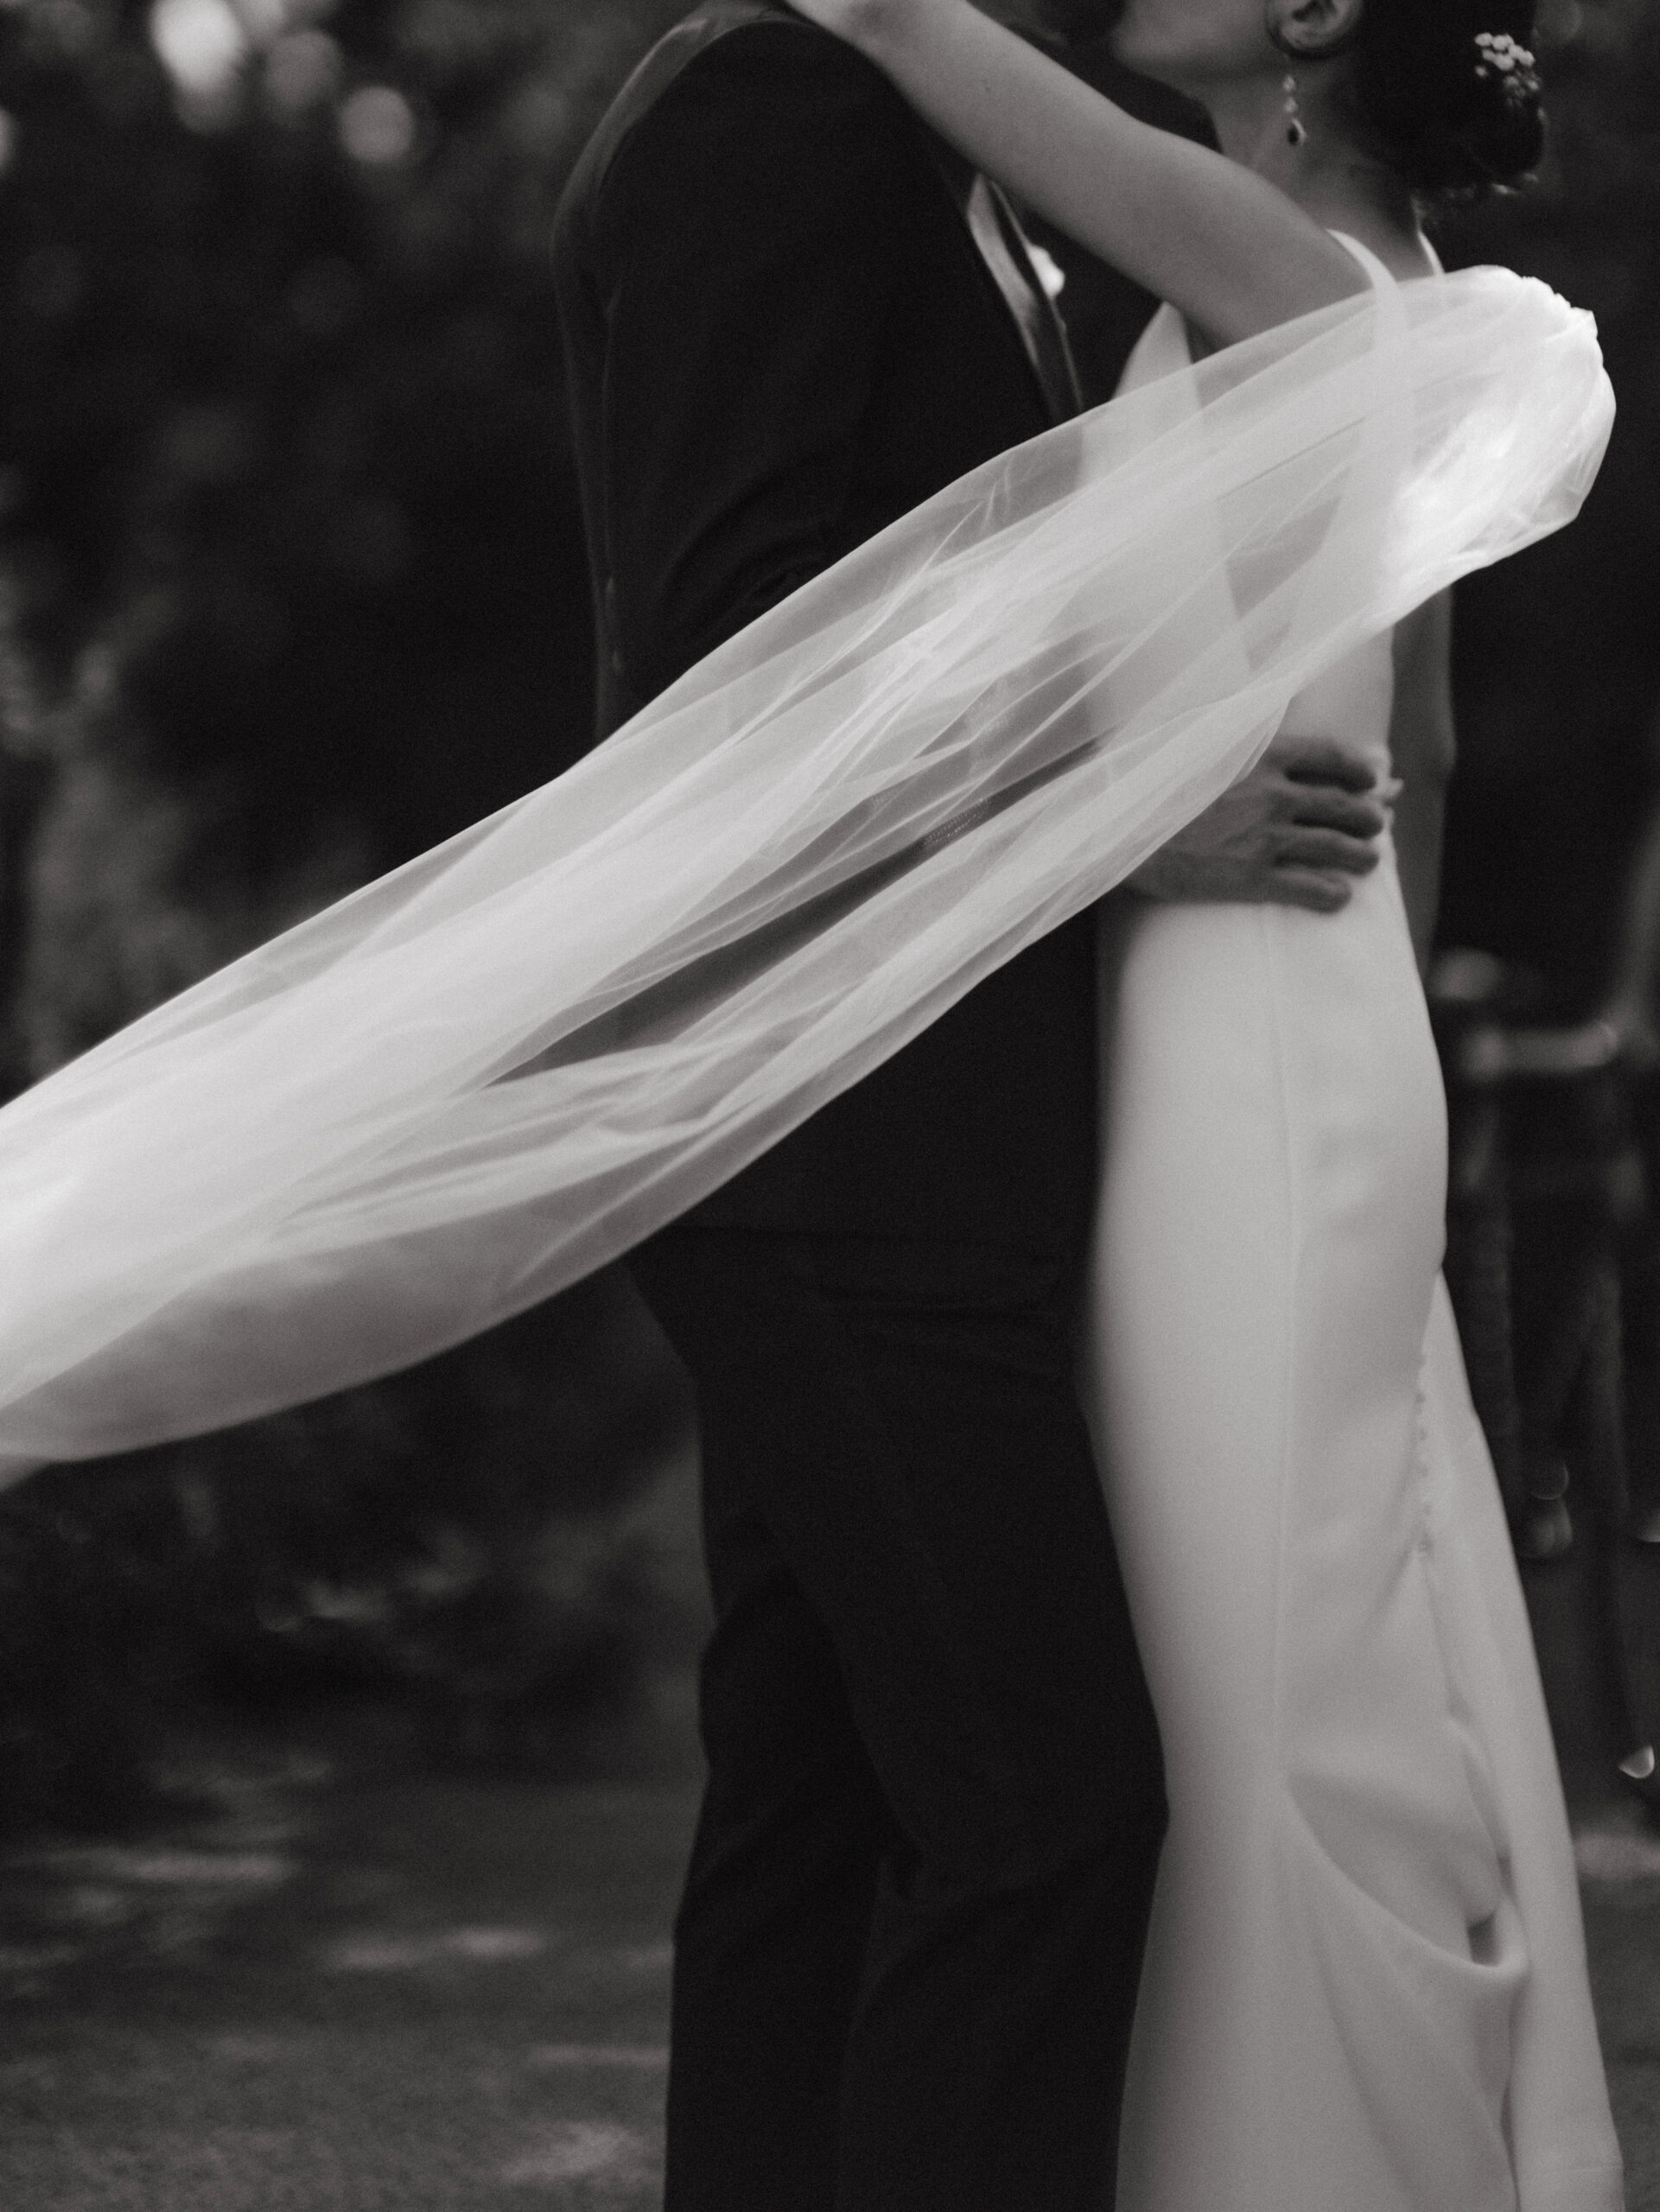 Black and white documentary wedding photography image by Jenny Fu Studio. 